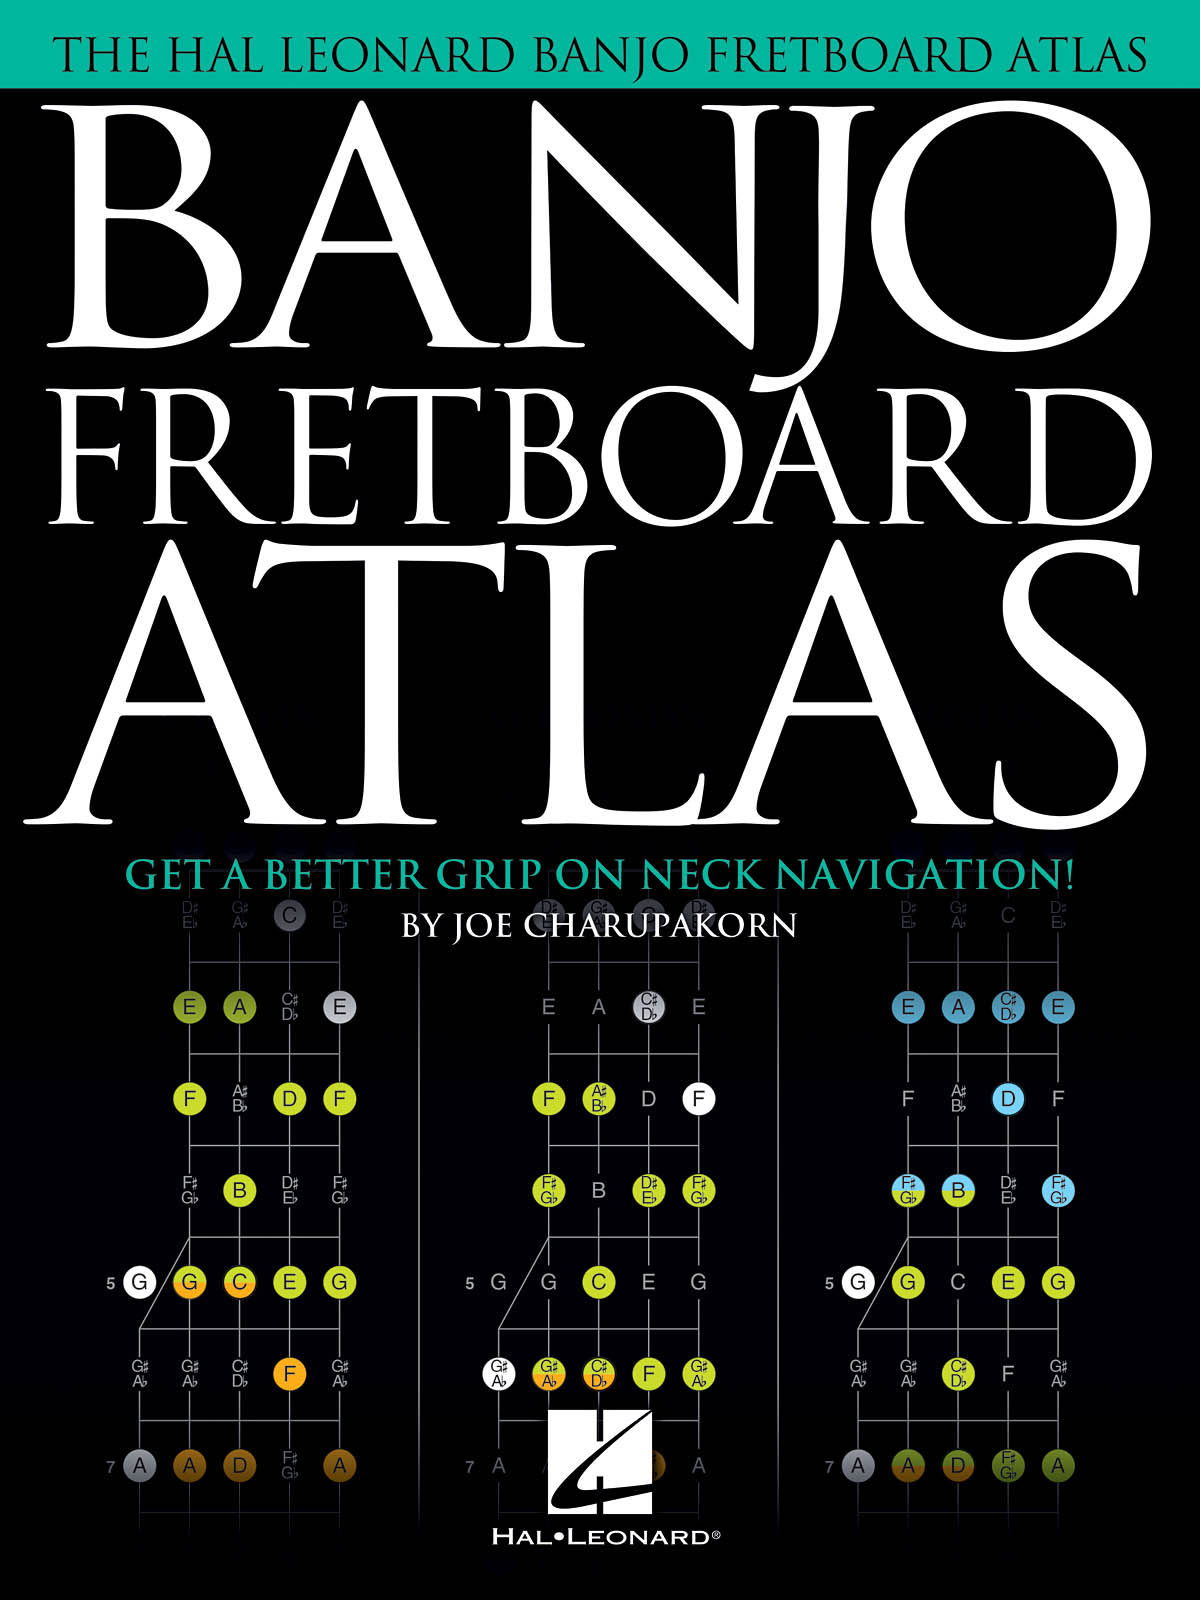 Banjo Fretboard Atlas - Get a Better Grip on Neck Navigation!